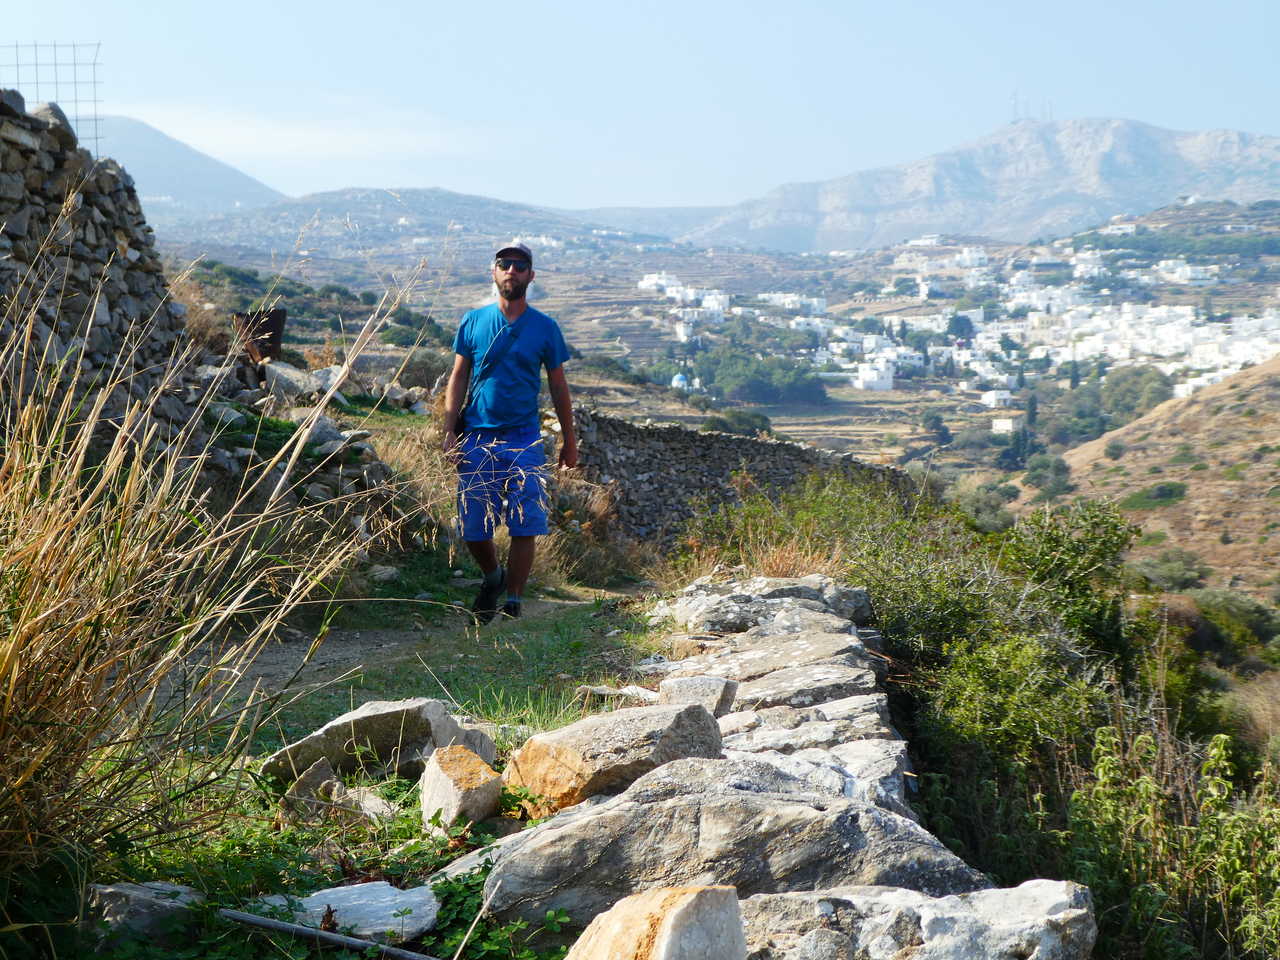 Randonnée à Paros, les sentiers muletiers, Cyclades